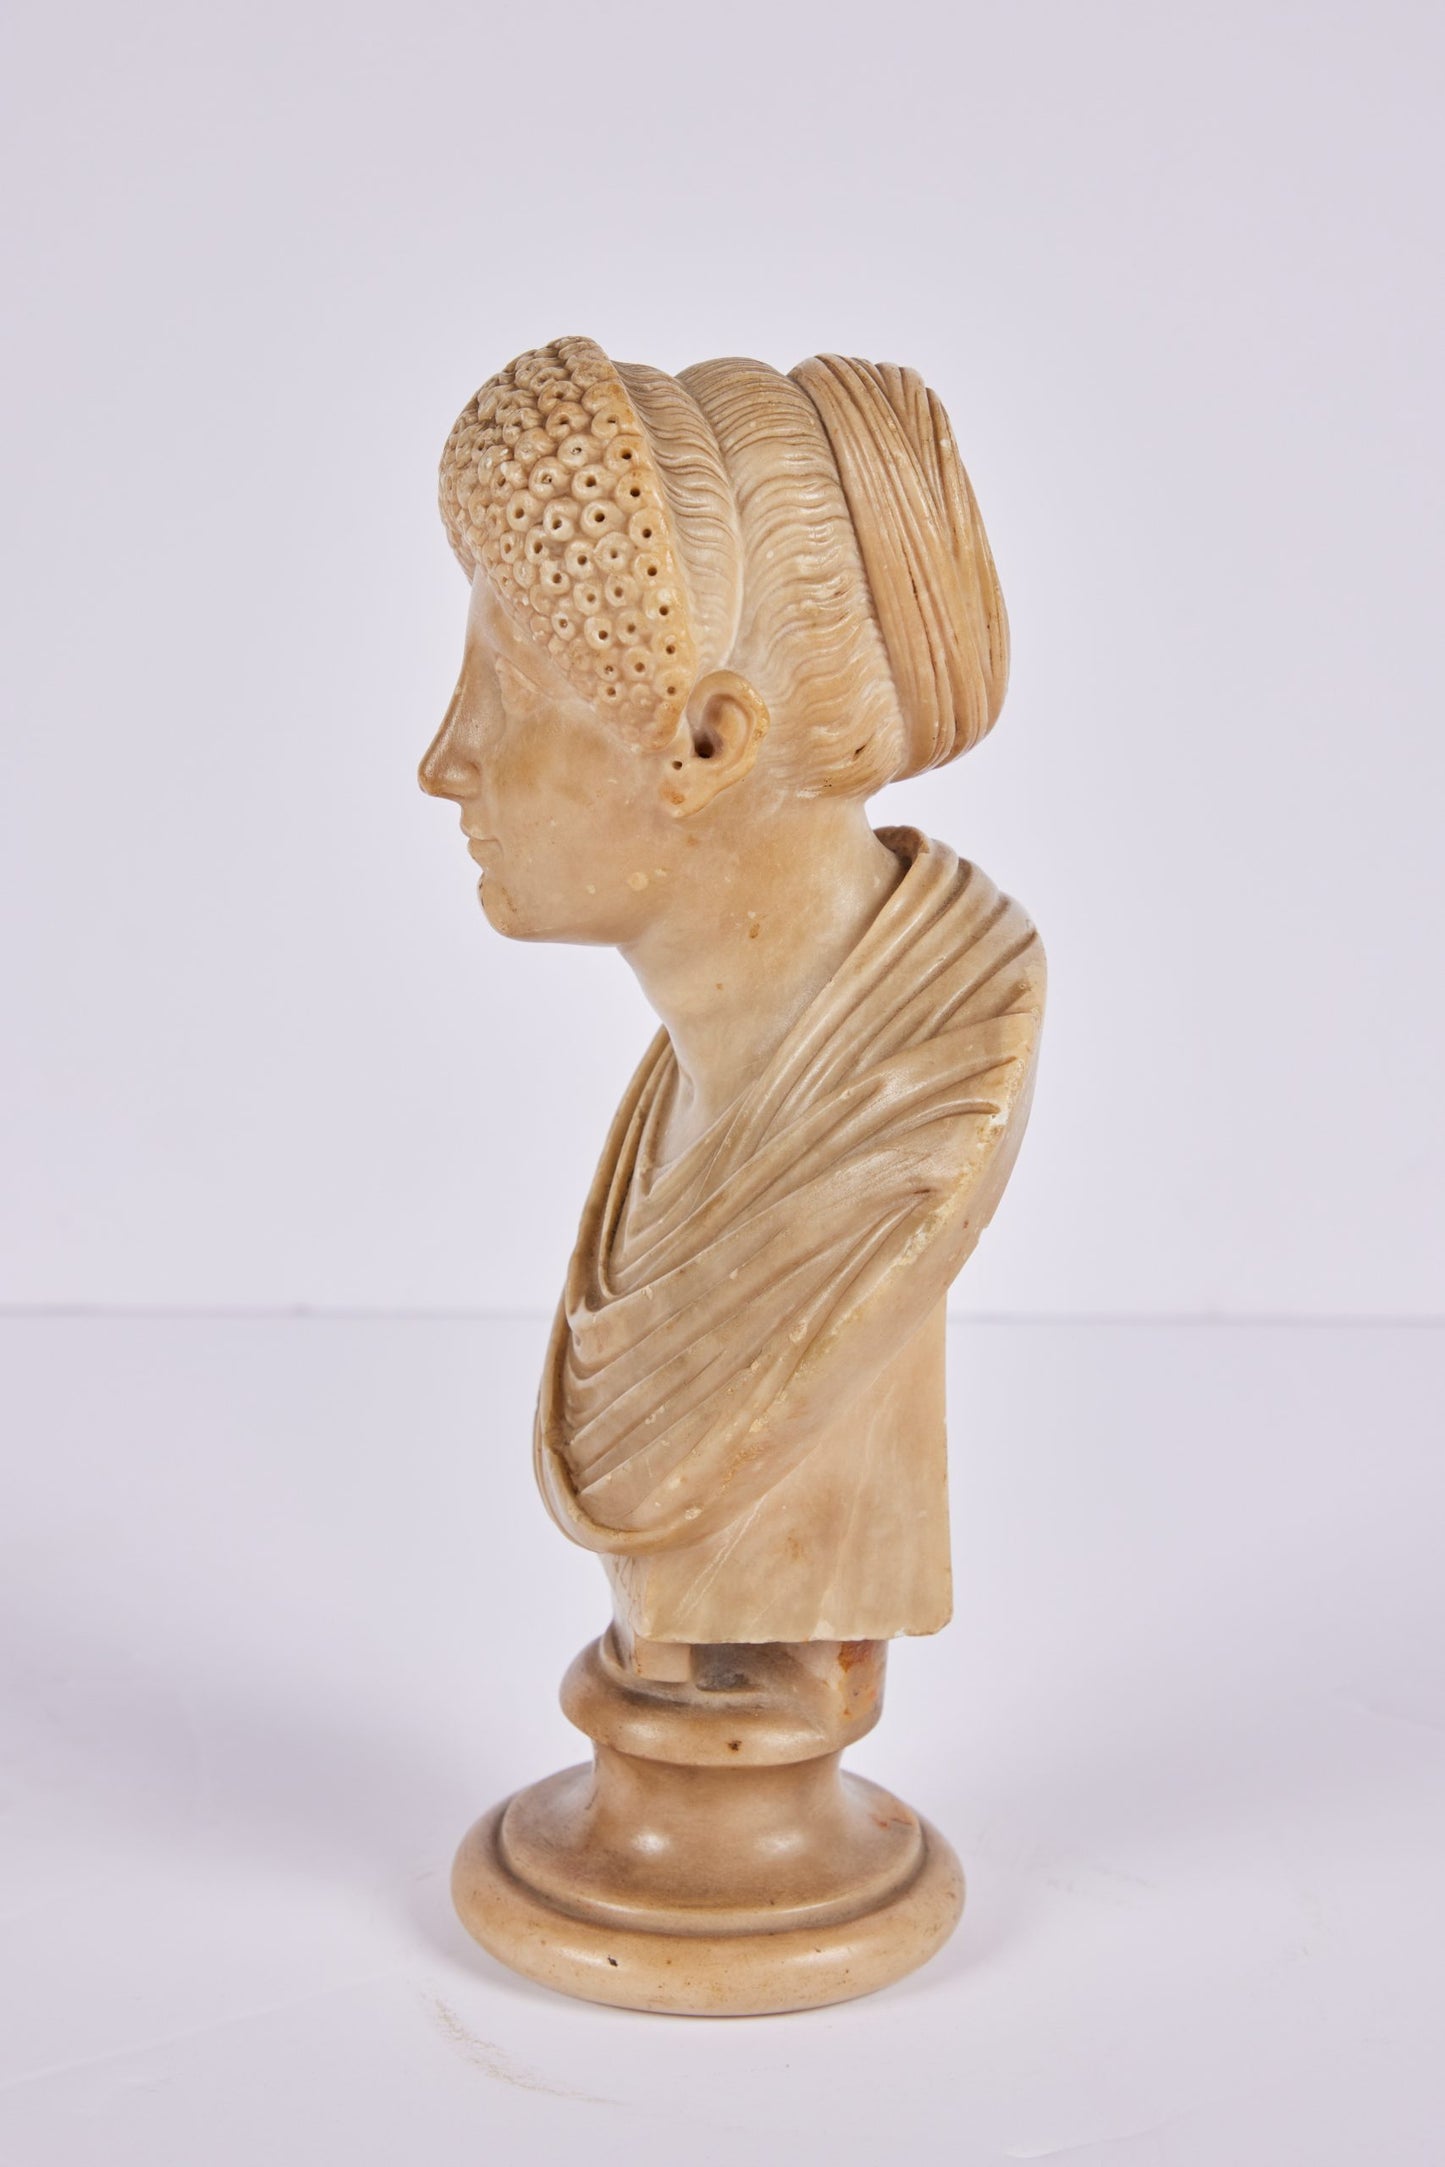 Alabaster Bust of a Roman Empress